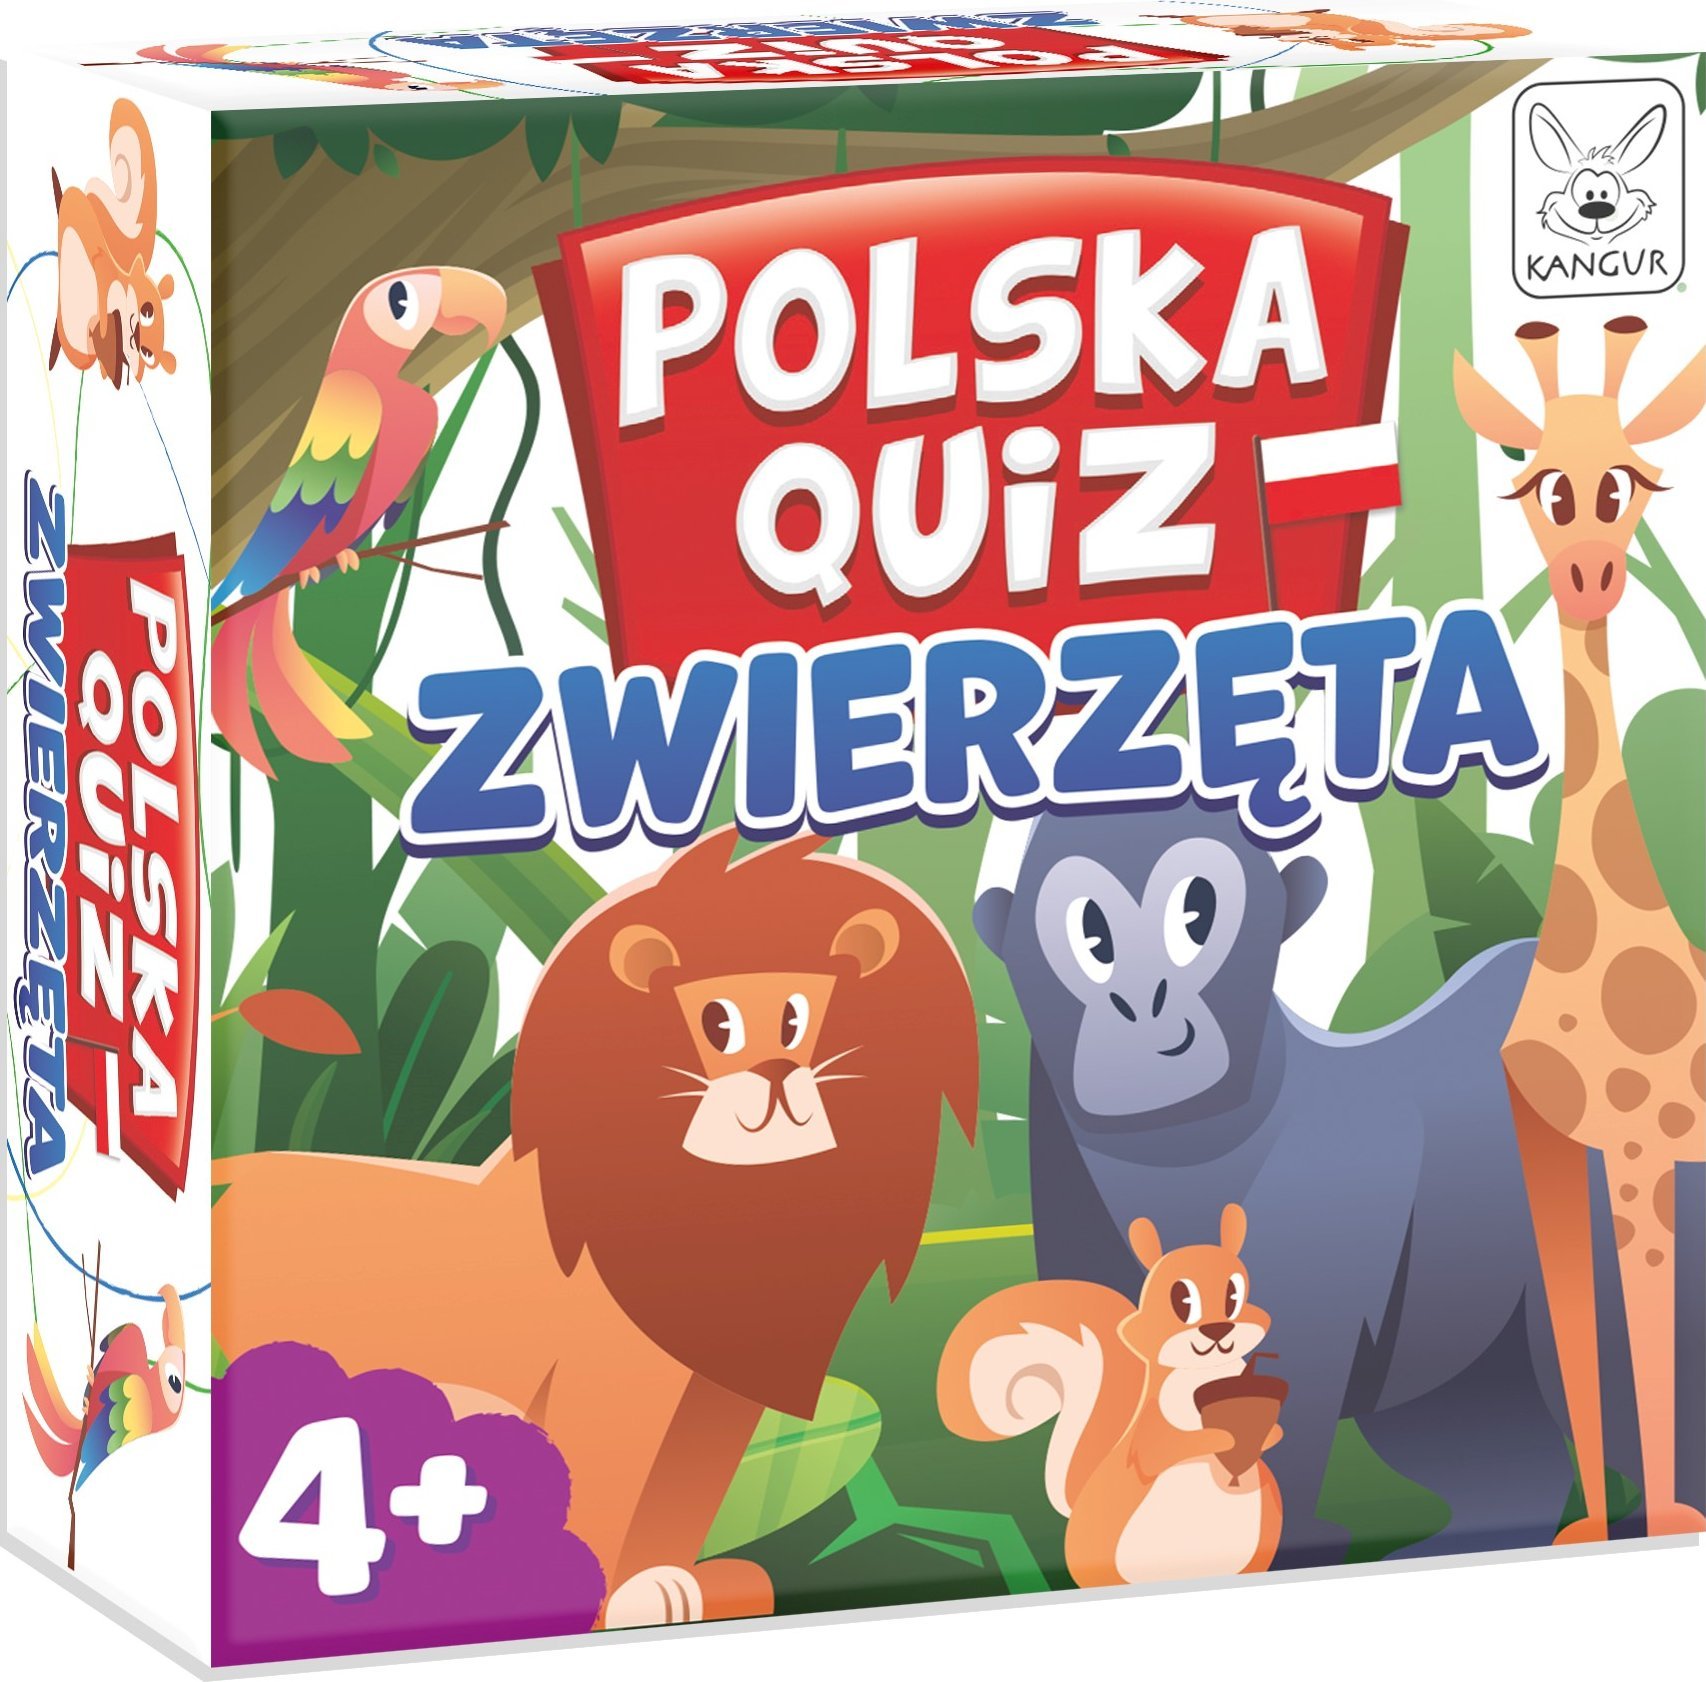 Kangur Polska Quiz: Zwierzęta 4+